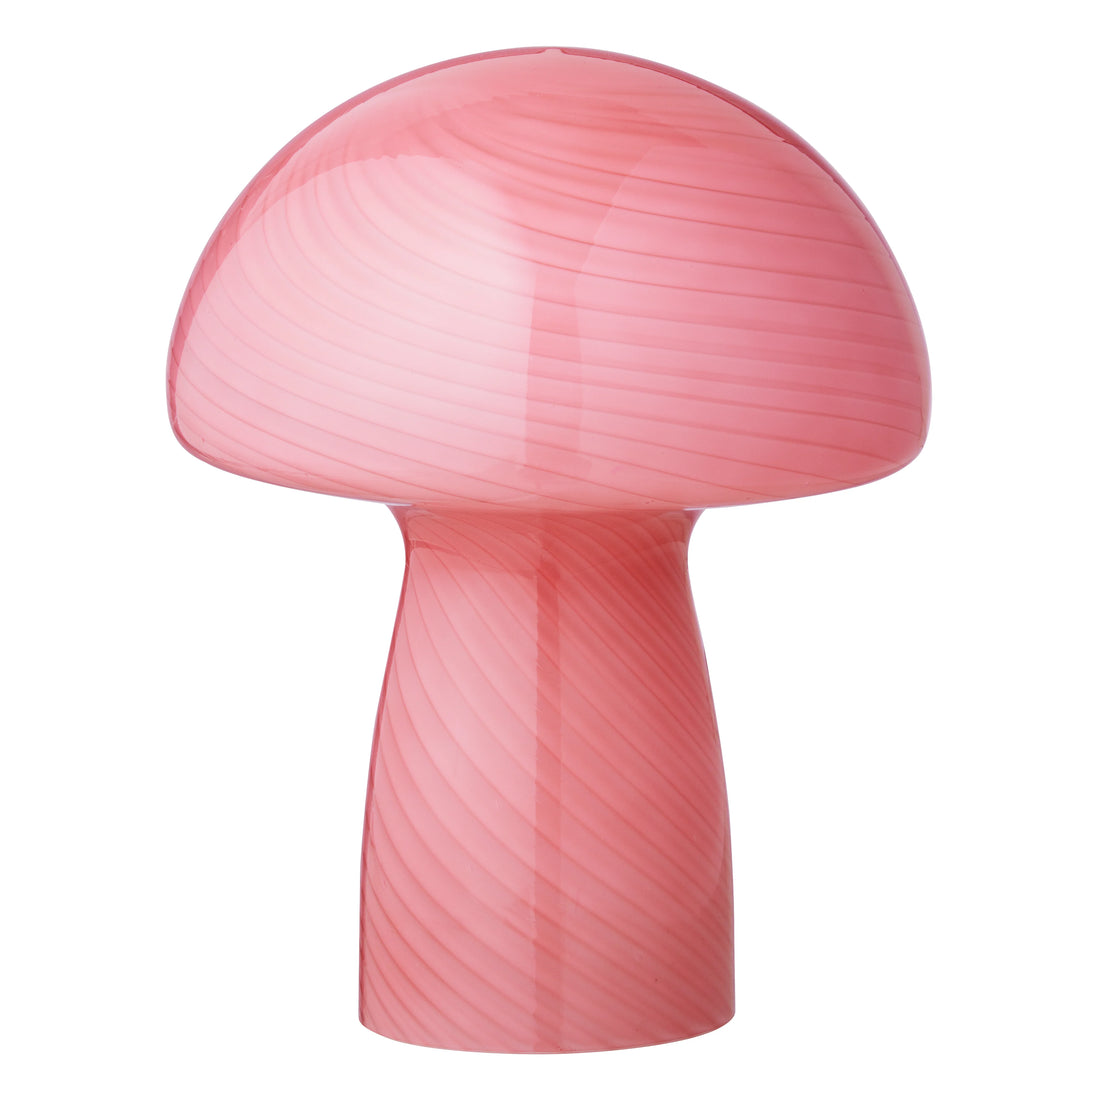 Bahne - sienilamppu - sienipöytävalaisin, kuplakumi - H23 cm.